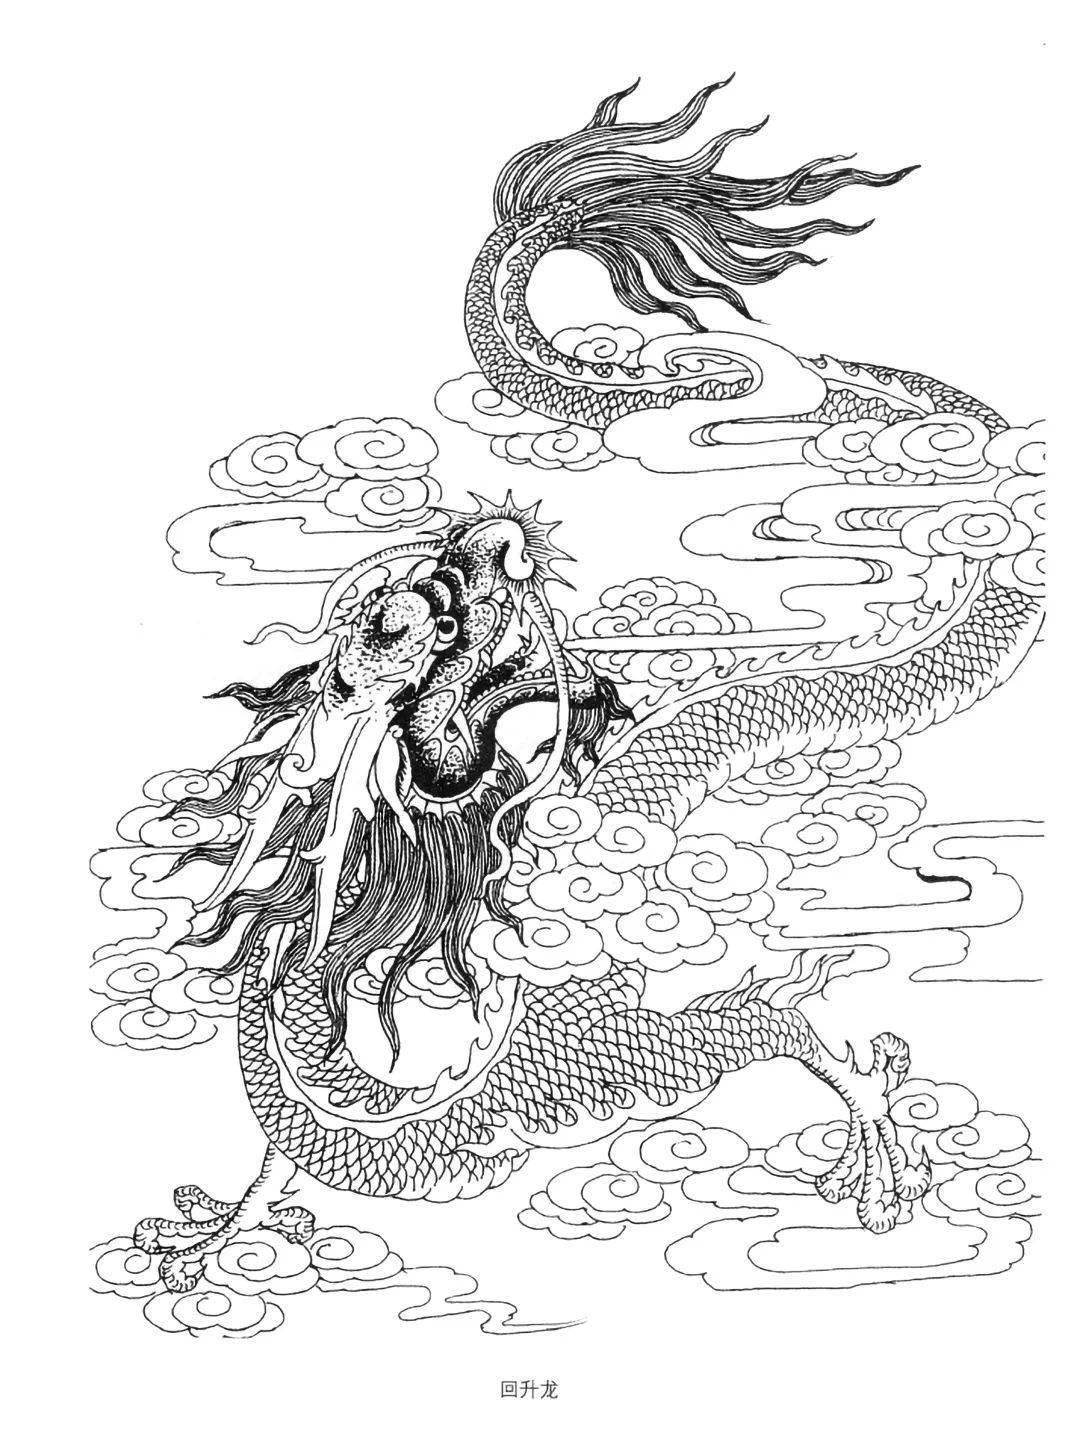 可以说,龙是中华民族传统文化的象征